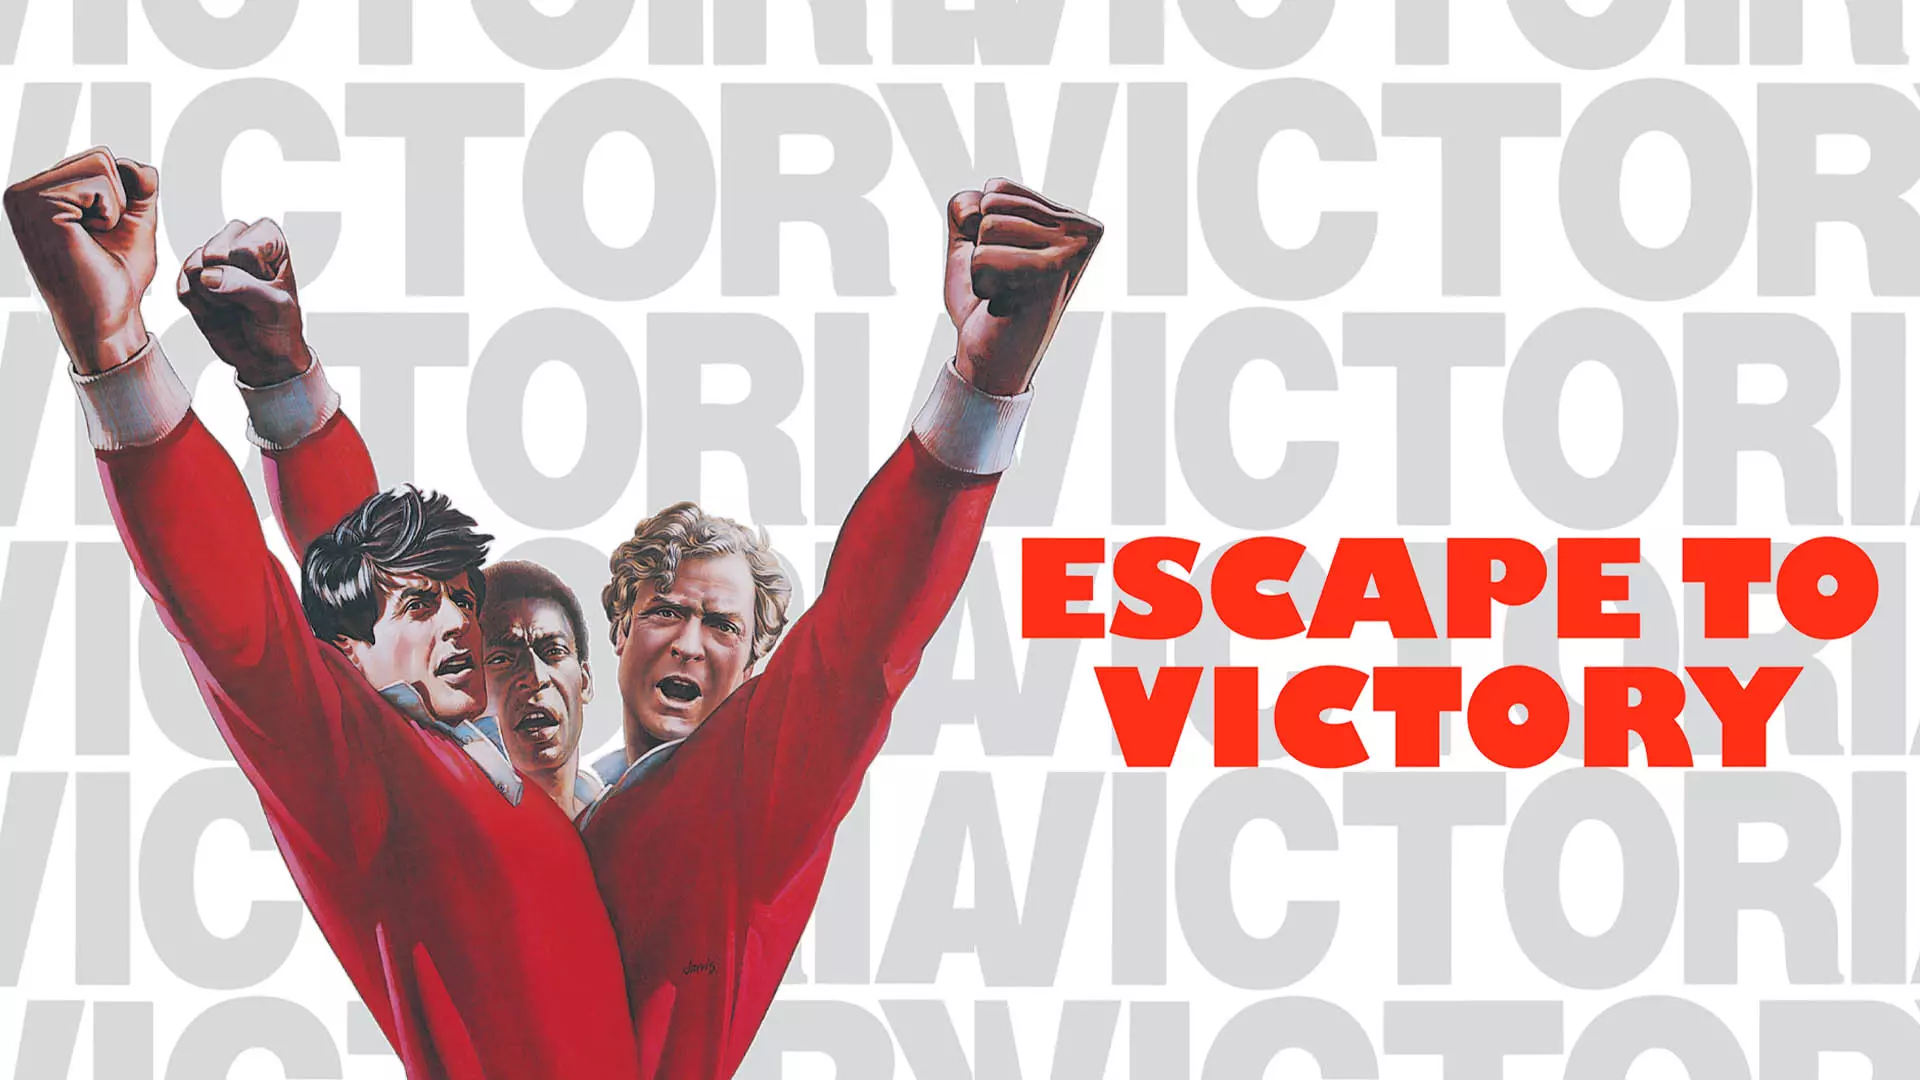 شخصیت های اصلی فیلم Escape to Victory با حضور پله و سیلوستر استالونه 